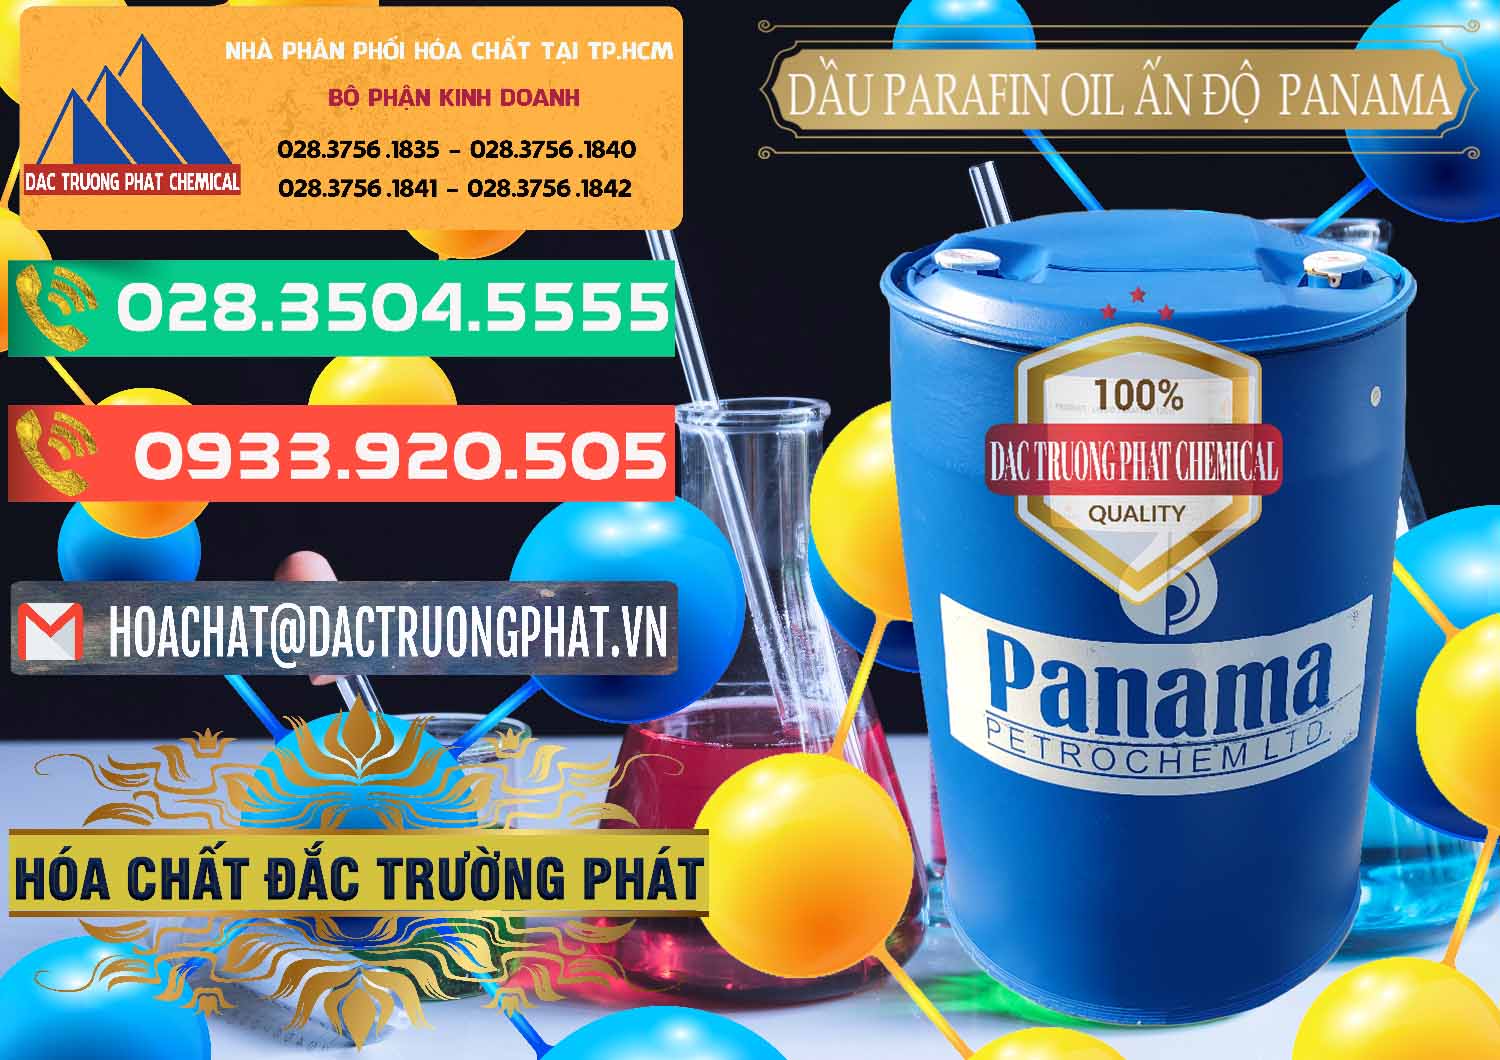 Cty chuyên kinh doanh _ bán Dầu Parafin Oil Panama Ấn Độ India - 0061 - Cty bán _ cung cấp hóa chất tại TP.HCM - congtyhoachat.com.vn